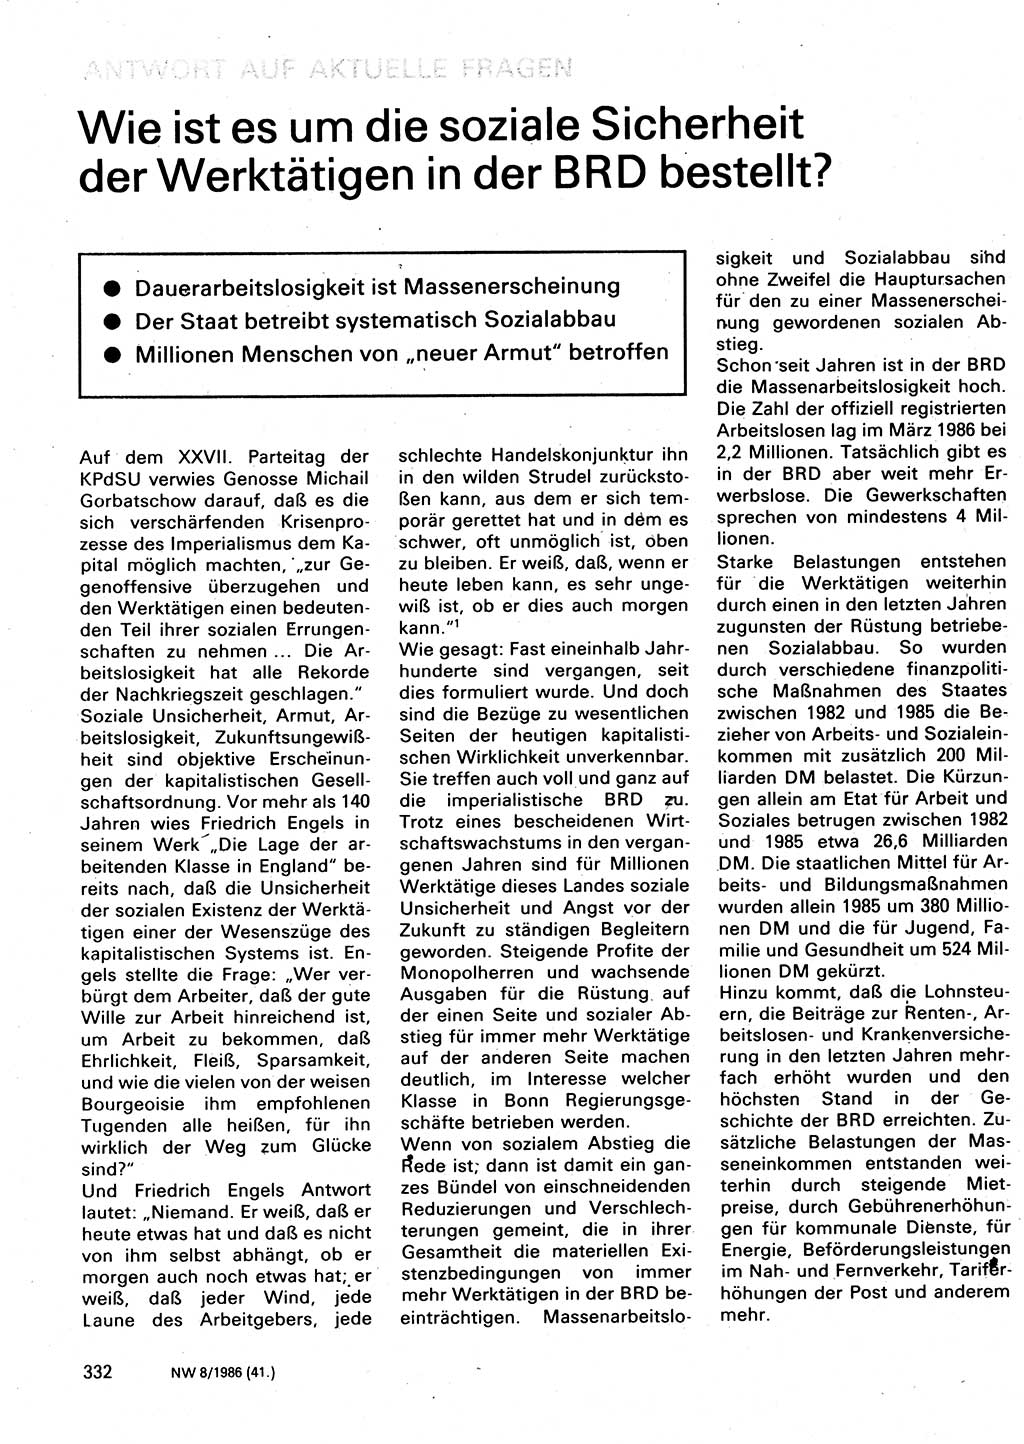 Neuer Weg (NW), Organ des Zentralkomitees (ZK) der SED (Sozialistische Einheitspartei Deutschlands) für Fragen des Parteilebens, 41. Jahrgang [Deutsche Demokratische Republik (DDR)] 1986, Seite 332 (NW ZK SED DDR 1986, S. 332)